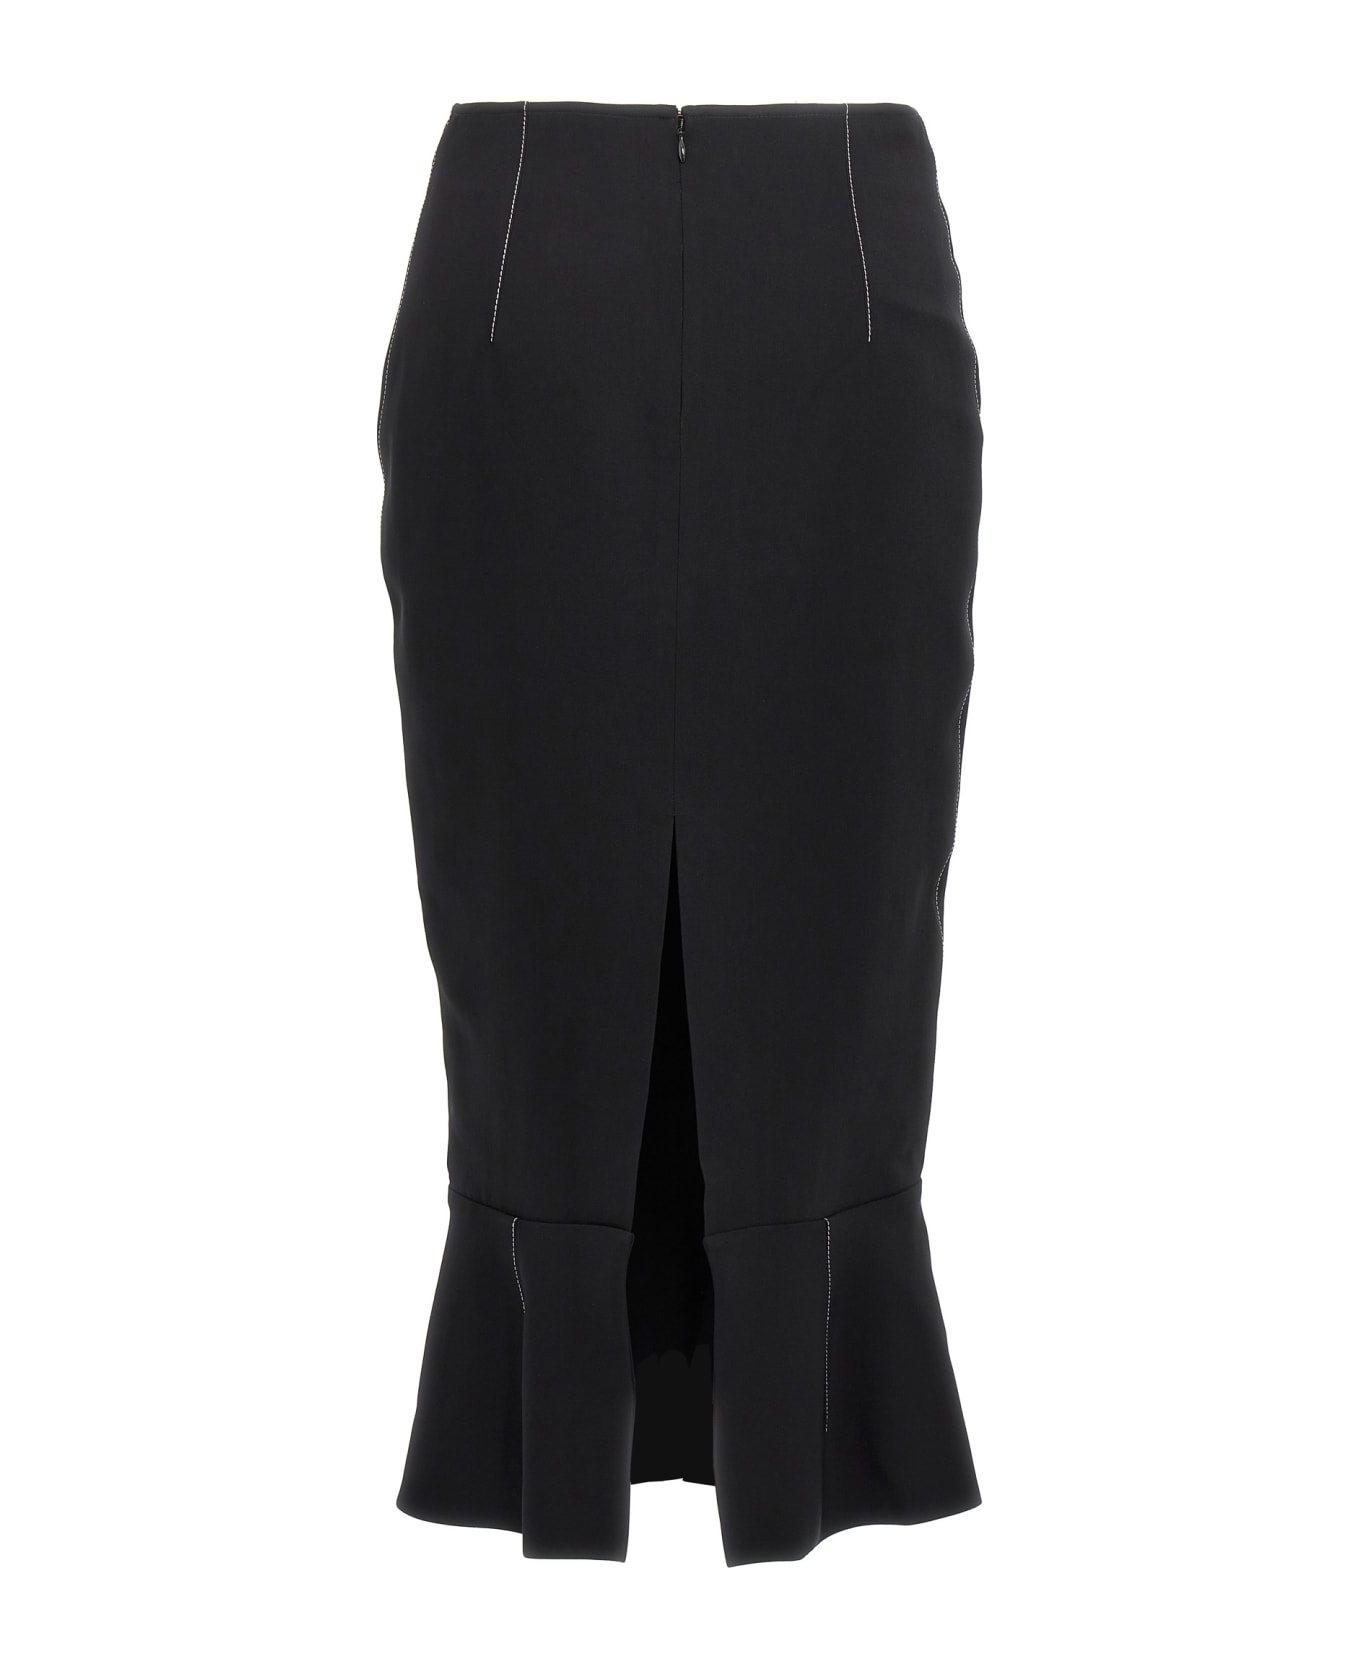 Marni Sheath Skirt - Black  